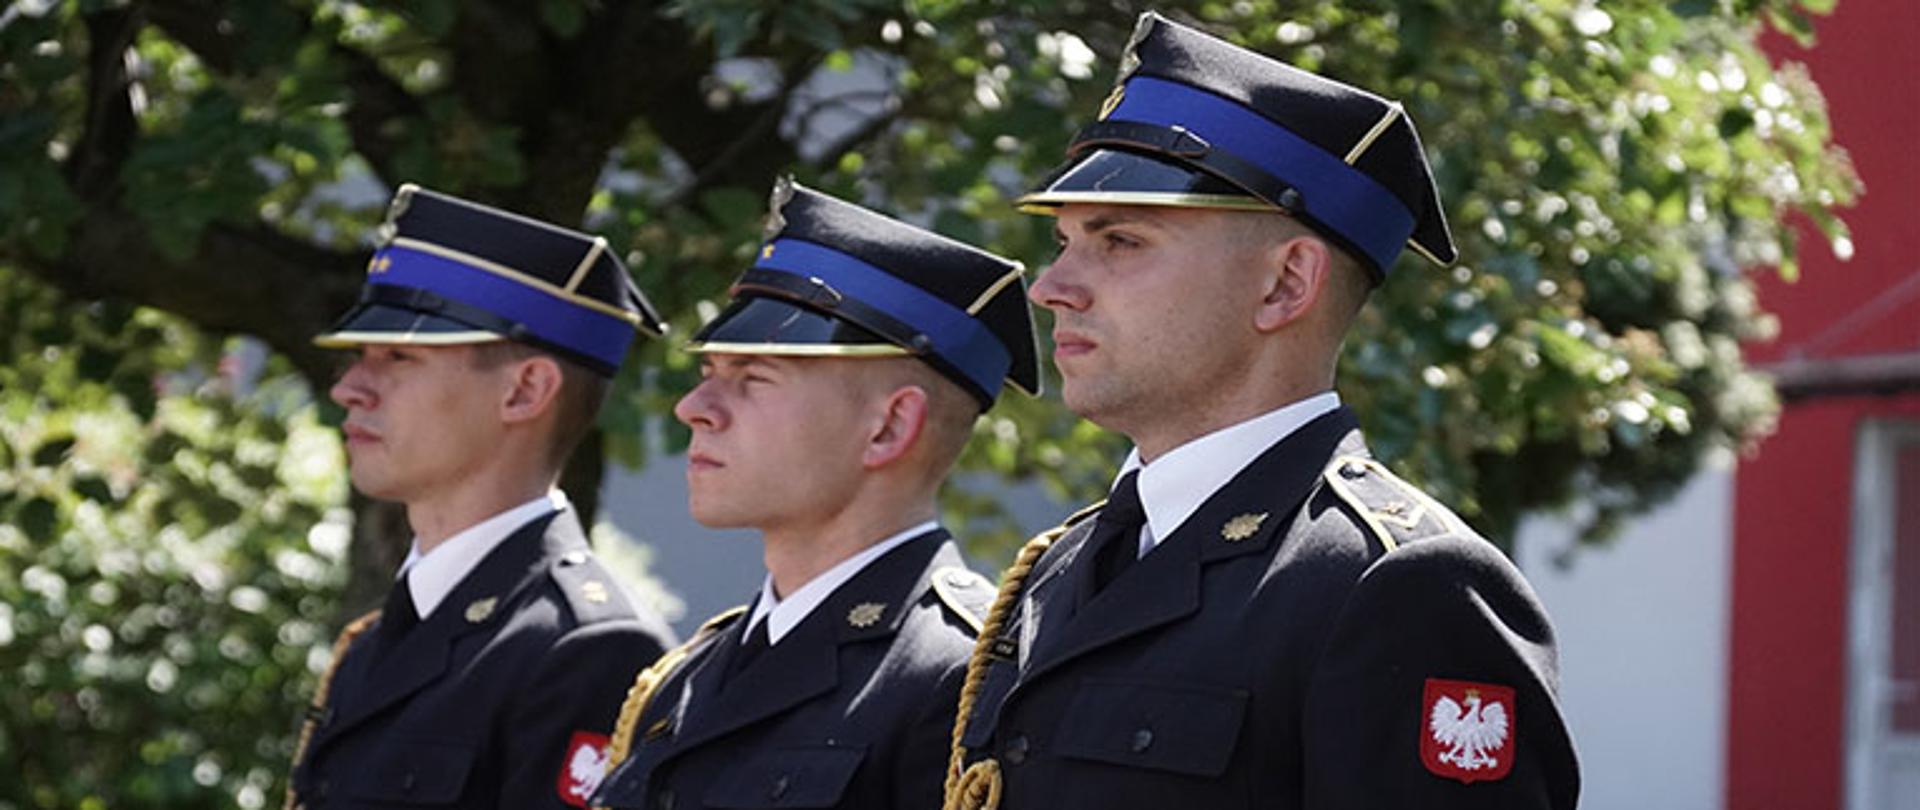 trzech strażaków ubranych w mundury galowe z rogatywką na głowie stoją w pozycji zasadniczej i patrzą przed siebie, w tle drzewa i budynek komendy